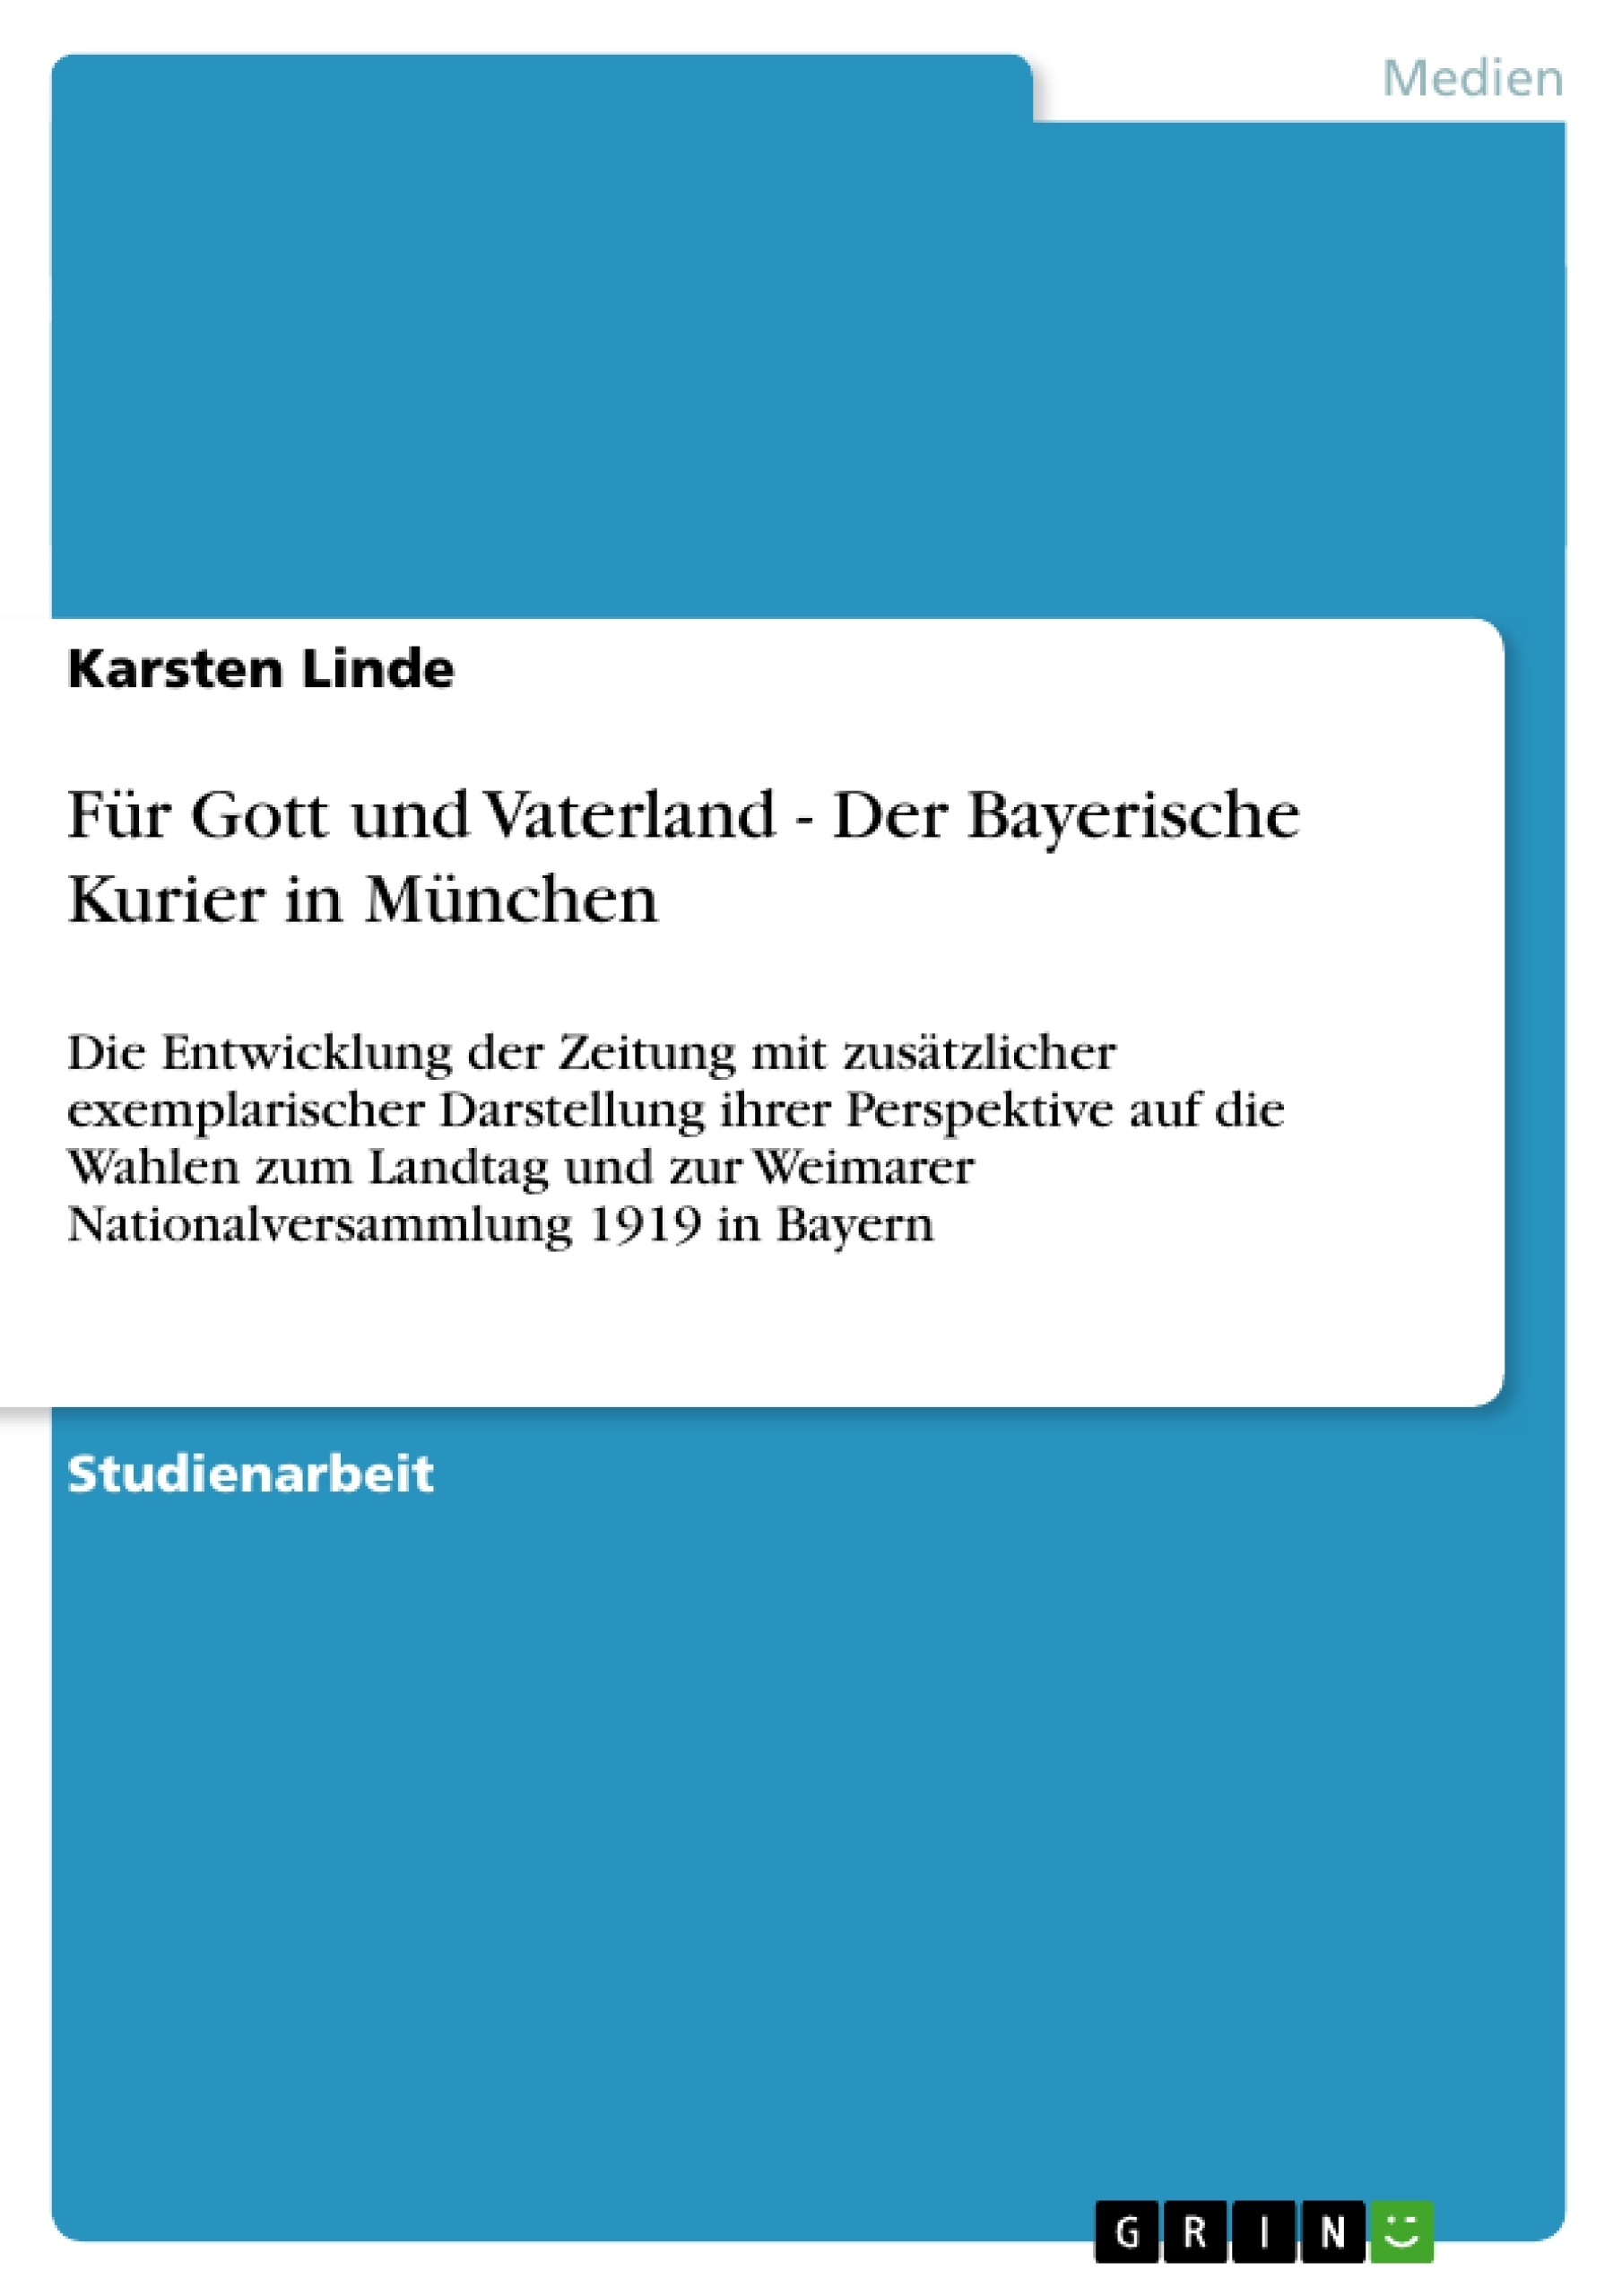 Title: Für Gott und Vaterland - Der Bayerische Kurier in München